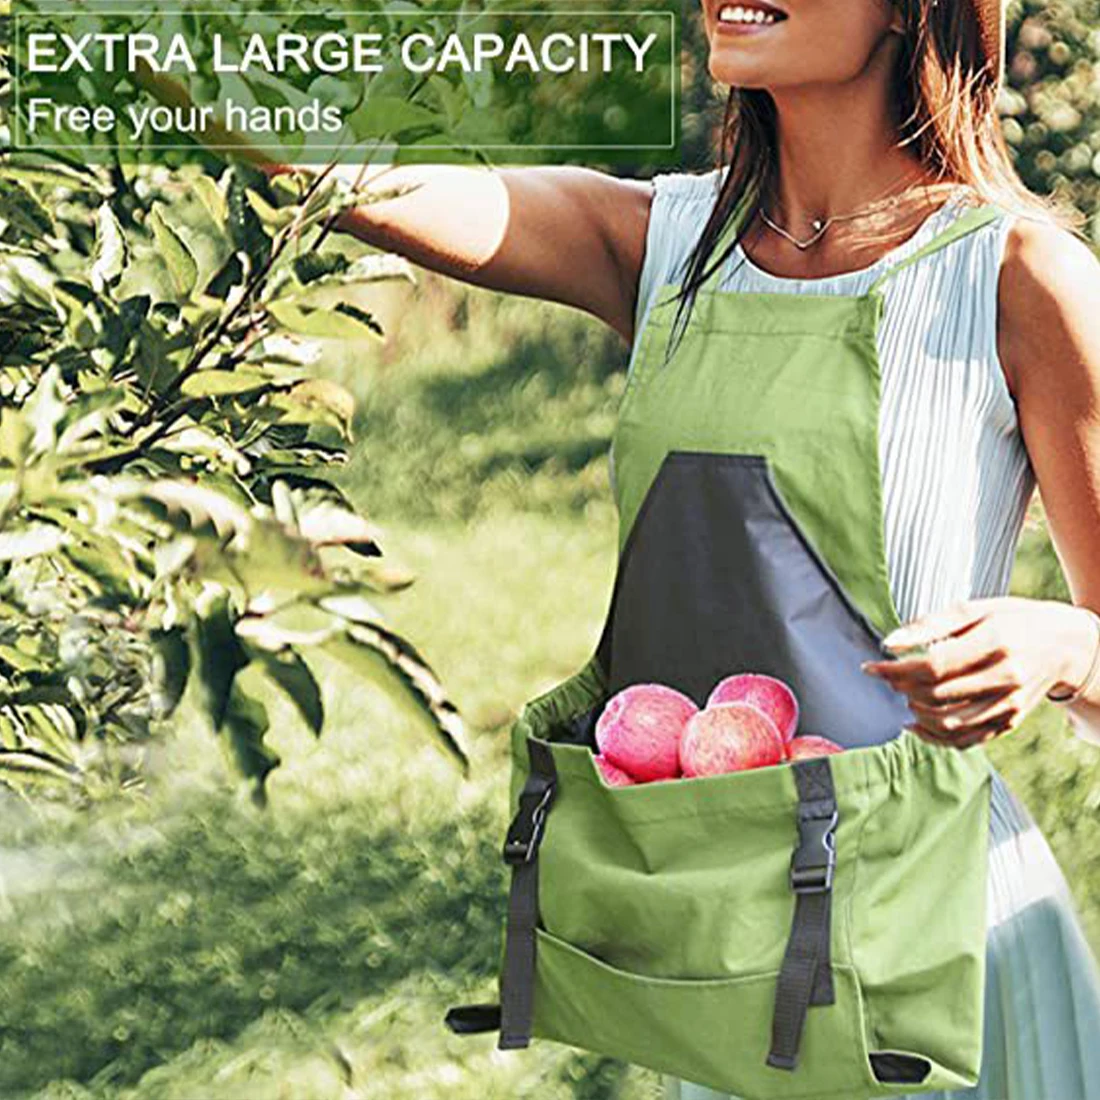 

Садовый фартук с большим карманом, водонепроницаемый, из ткани Оксфорд, глубокий мешок, сумка для сбора фруктов, универсальный рюкзак, рабочий инструмент